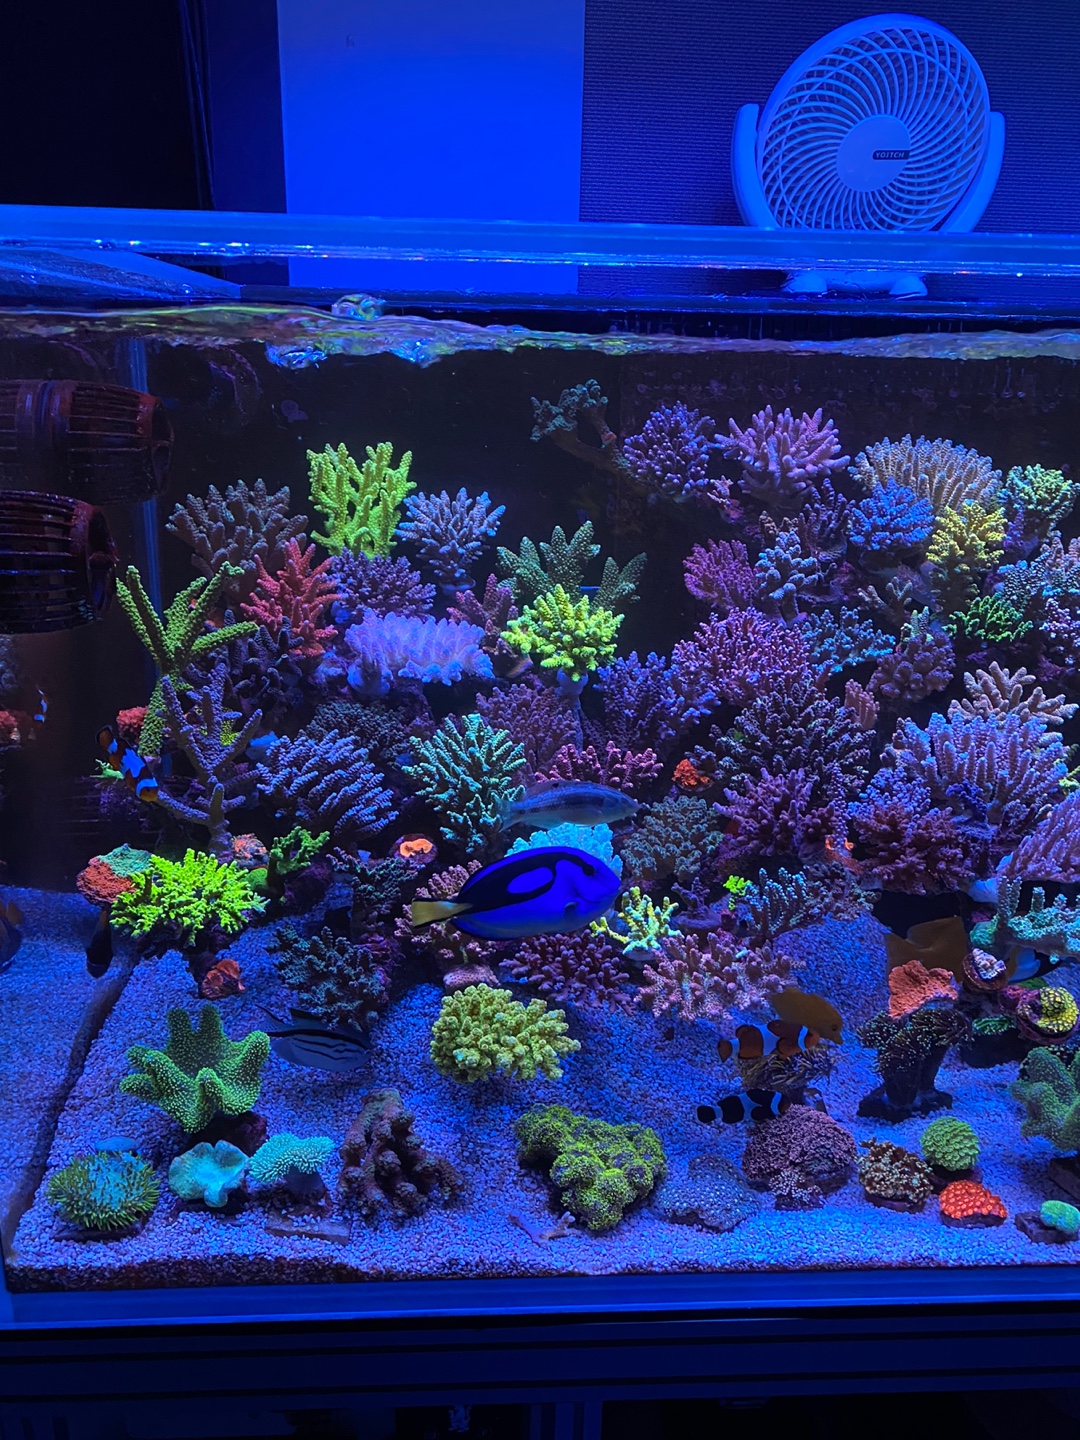 ที่ดีที่สุด-แนวปะการังพิพิธภัณฑ์สัตว์น้ำ-led-light-20222